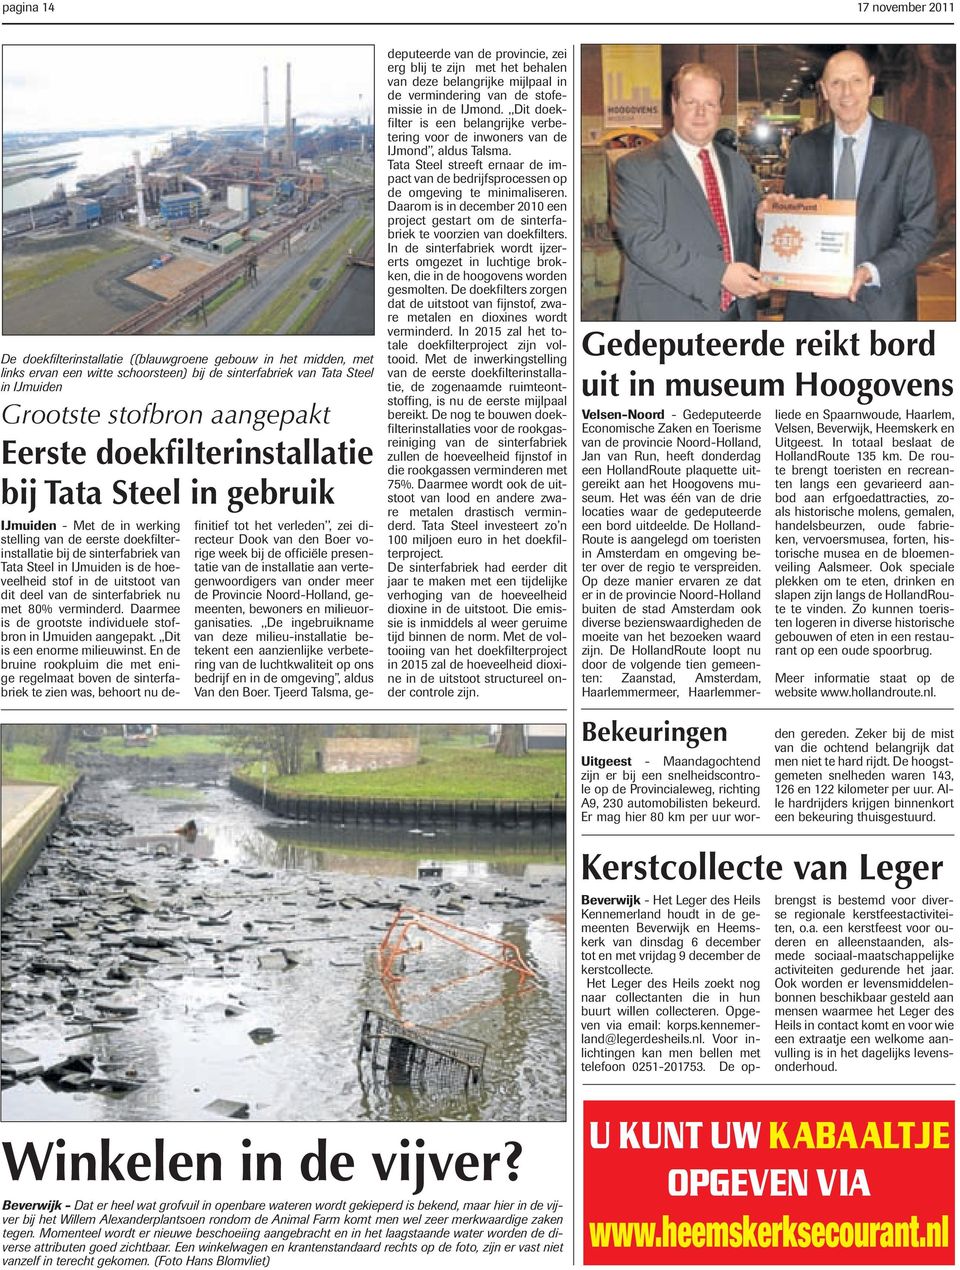 hoeveelheid stof in de uitstoot van dit deel van de sinterfabriek nu met 80% verminderd. Daarmee is de grootste individuele stofbron in IJmuiden aangepakt.,,dit is een enorme milieuwinst.